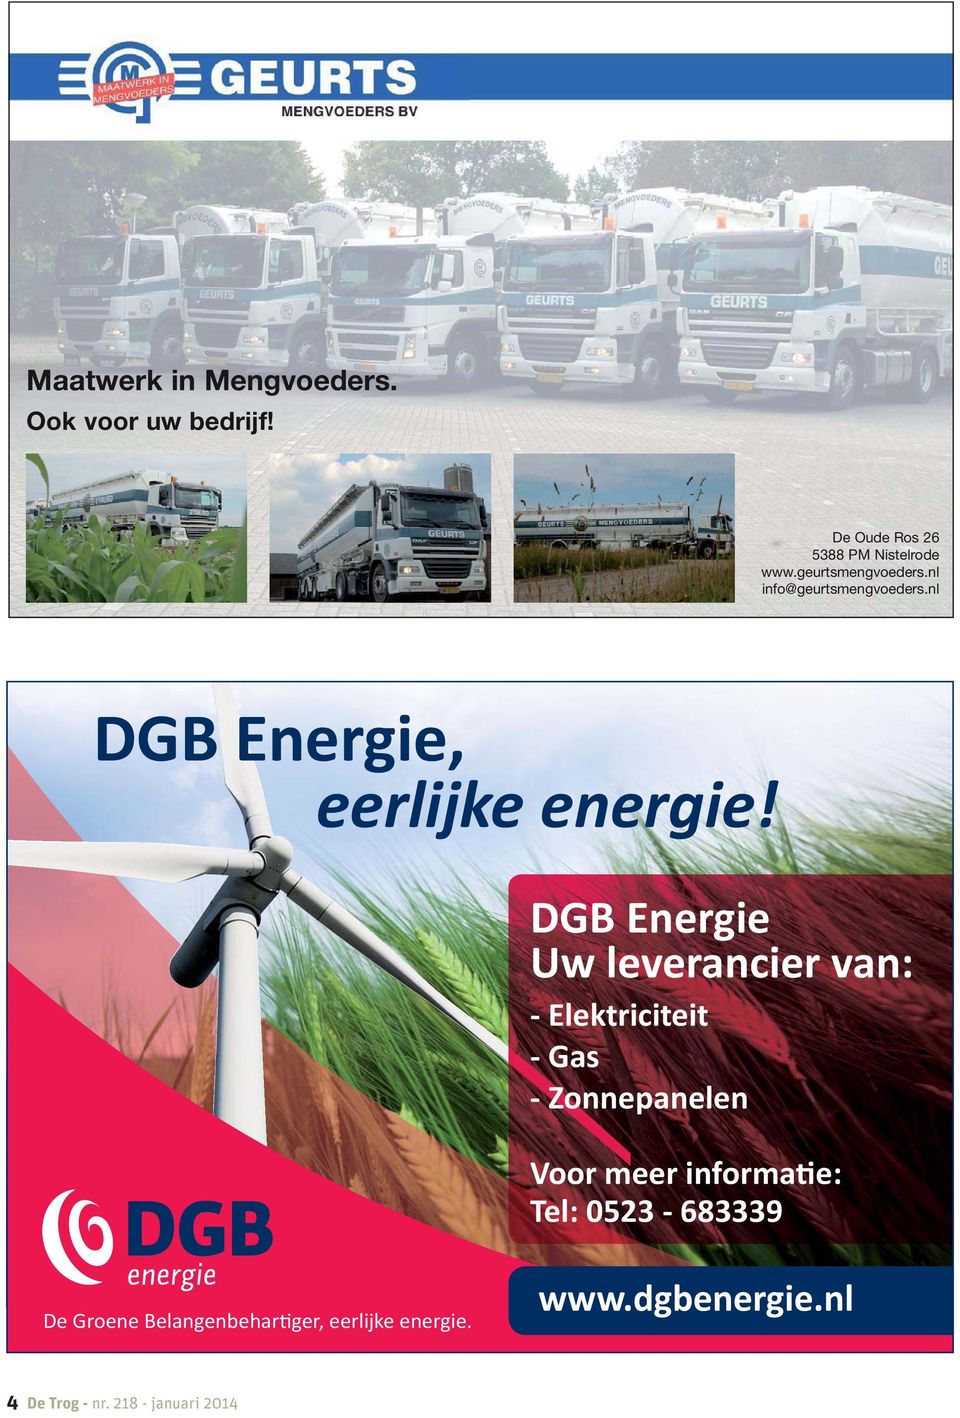 DGB Energie Uw leverancier van: - Elektriciteit - Gas - Zonnepanelen Voor meer informa e: